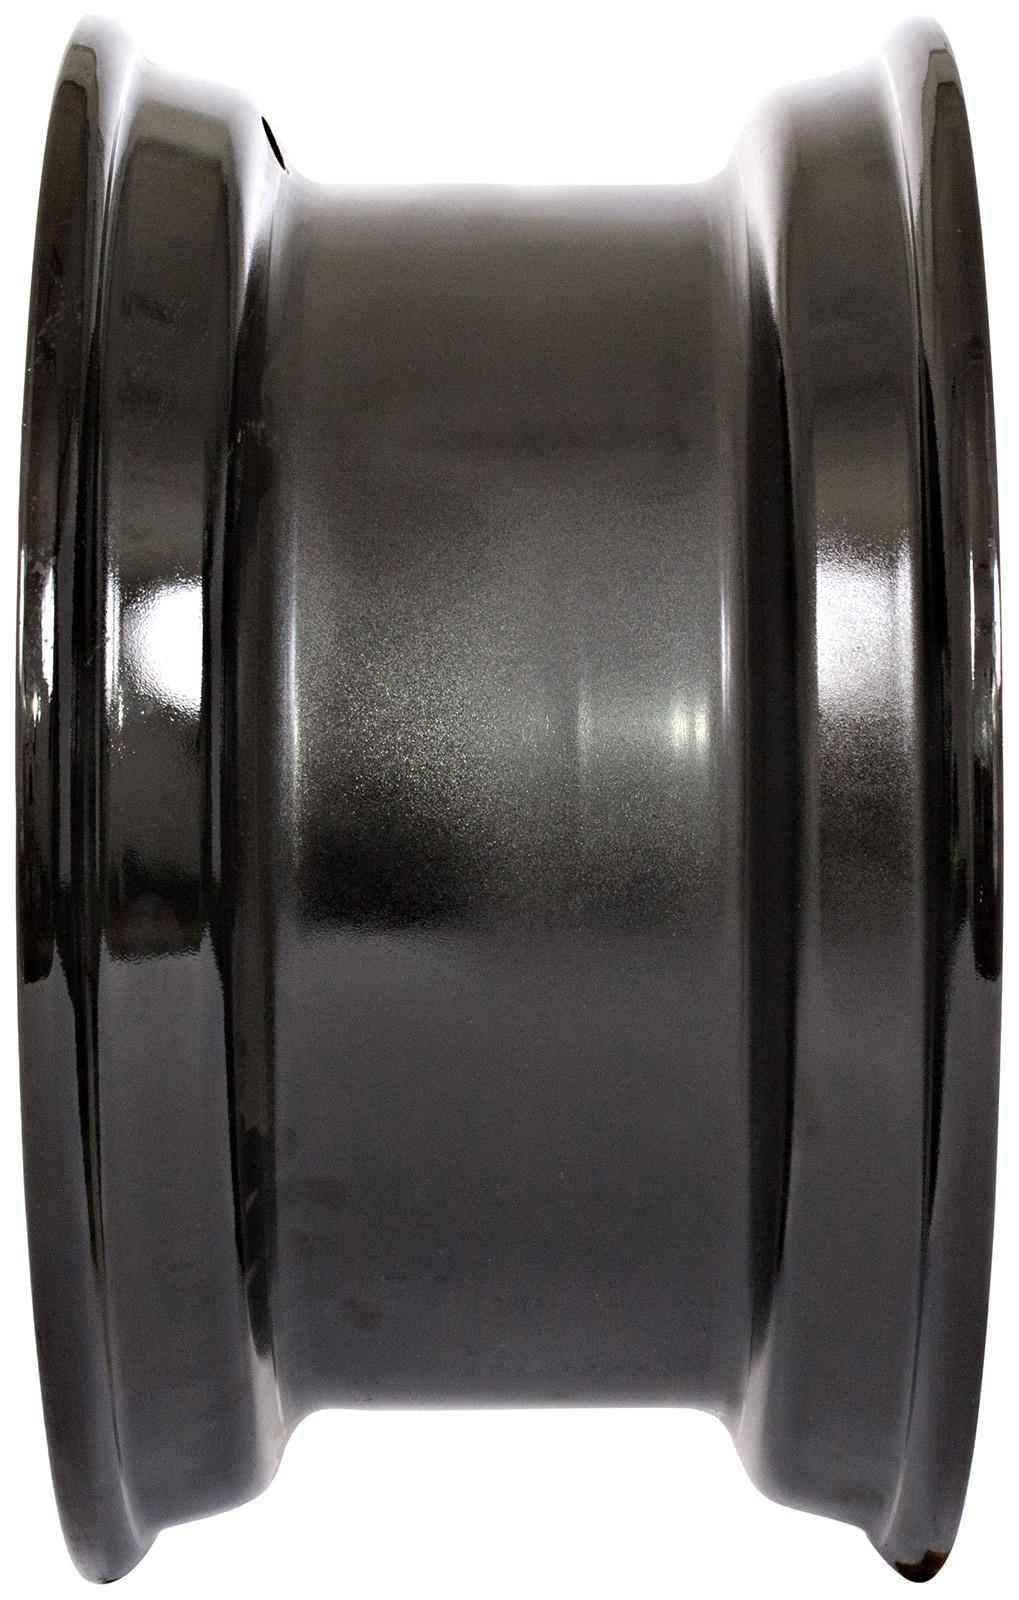 set of 4 titan wheels 16.5x8.25 - 7 1/2" offset 8x8 bolt black